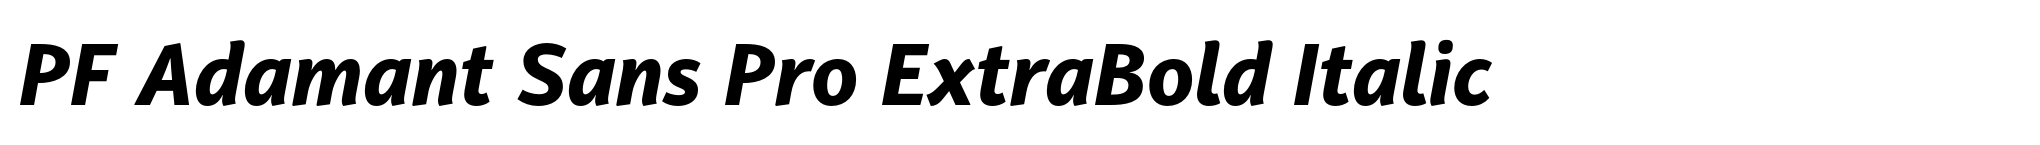 PF Adamant Sans Pro ExtraBold Italic image